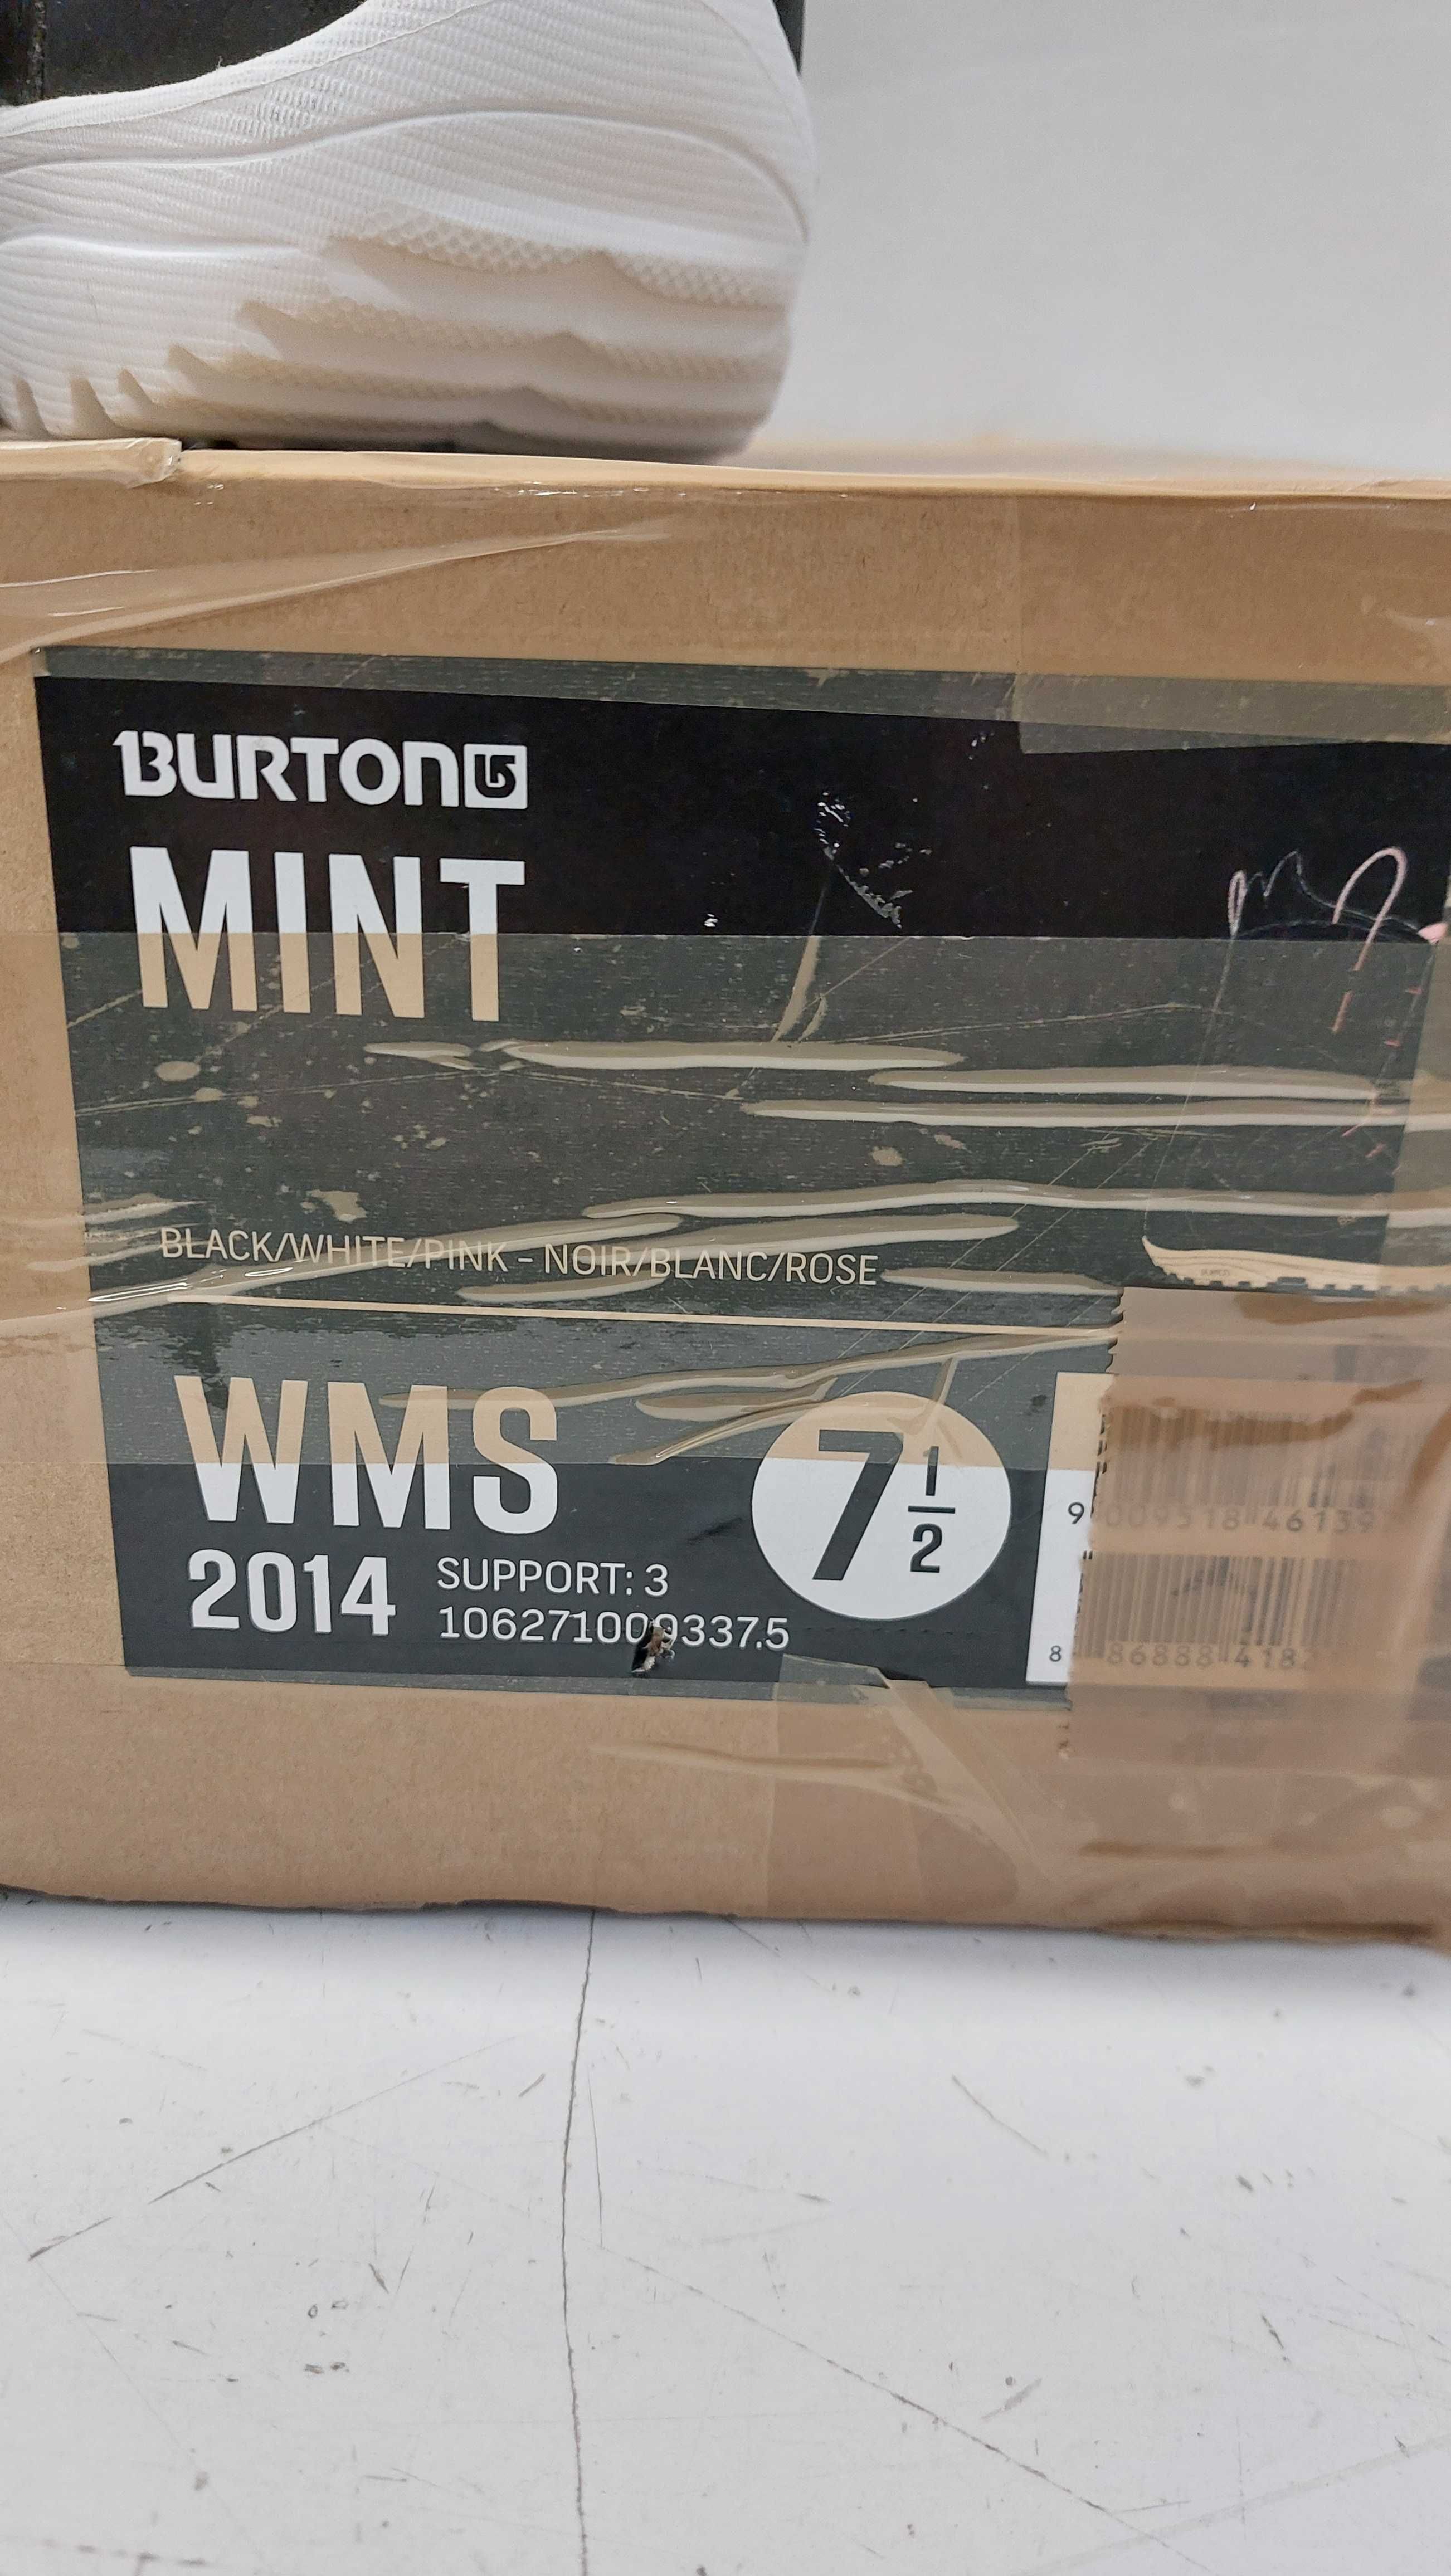 Buty snowboardowe Burton Mint roz.39- 245 mm. długość wkładki